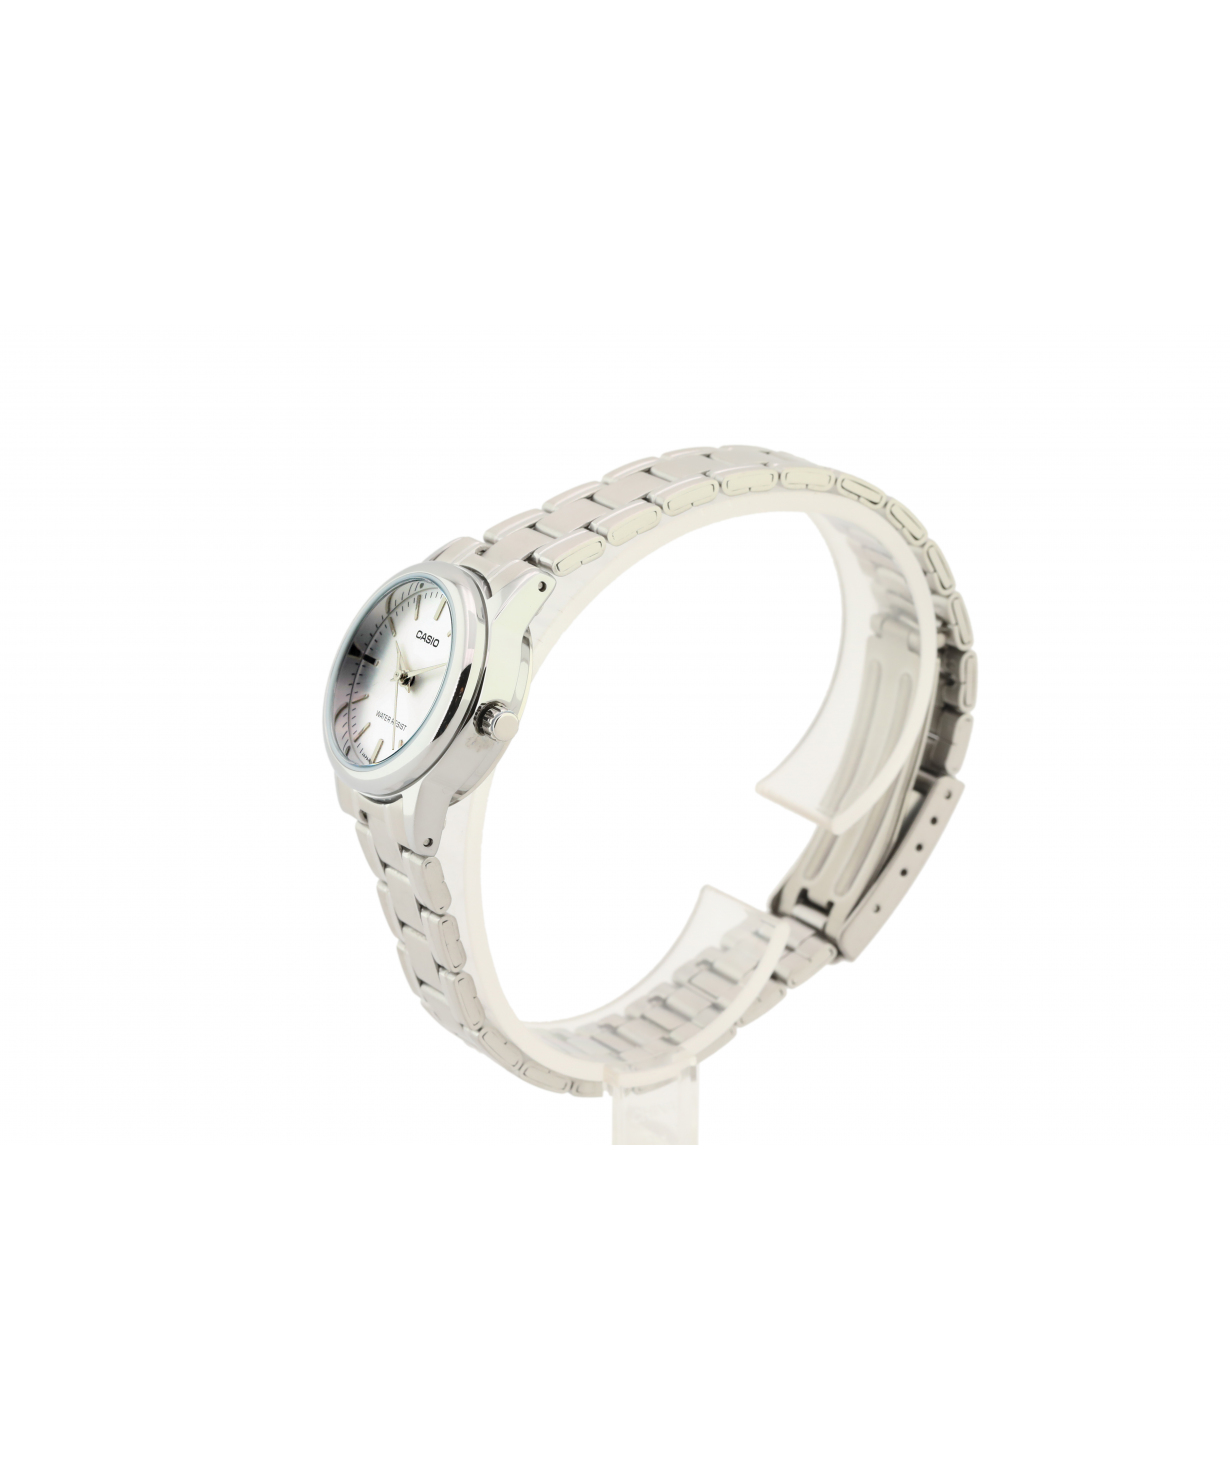 Wristwatch `Casio` LTP-V002D-7AUDF